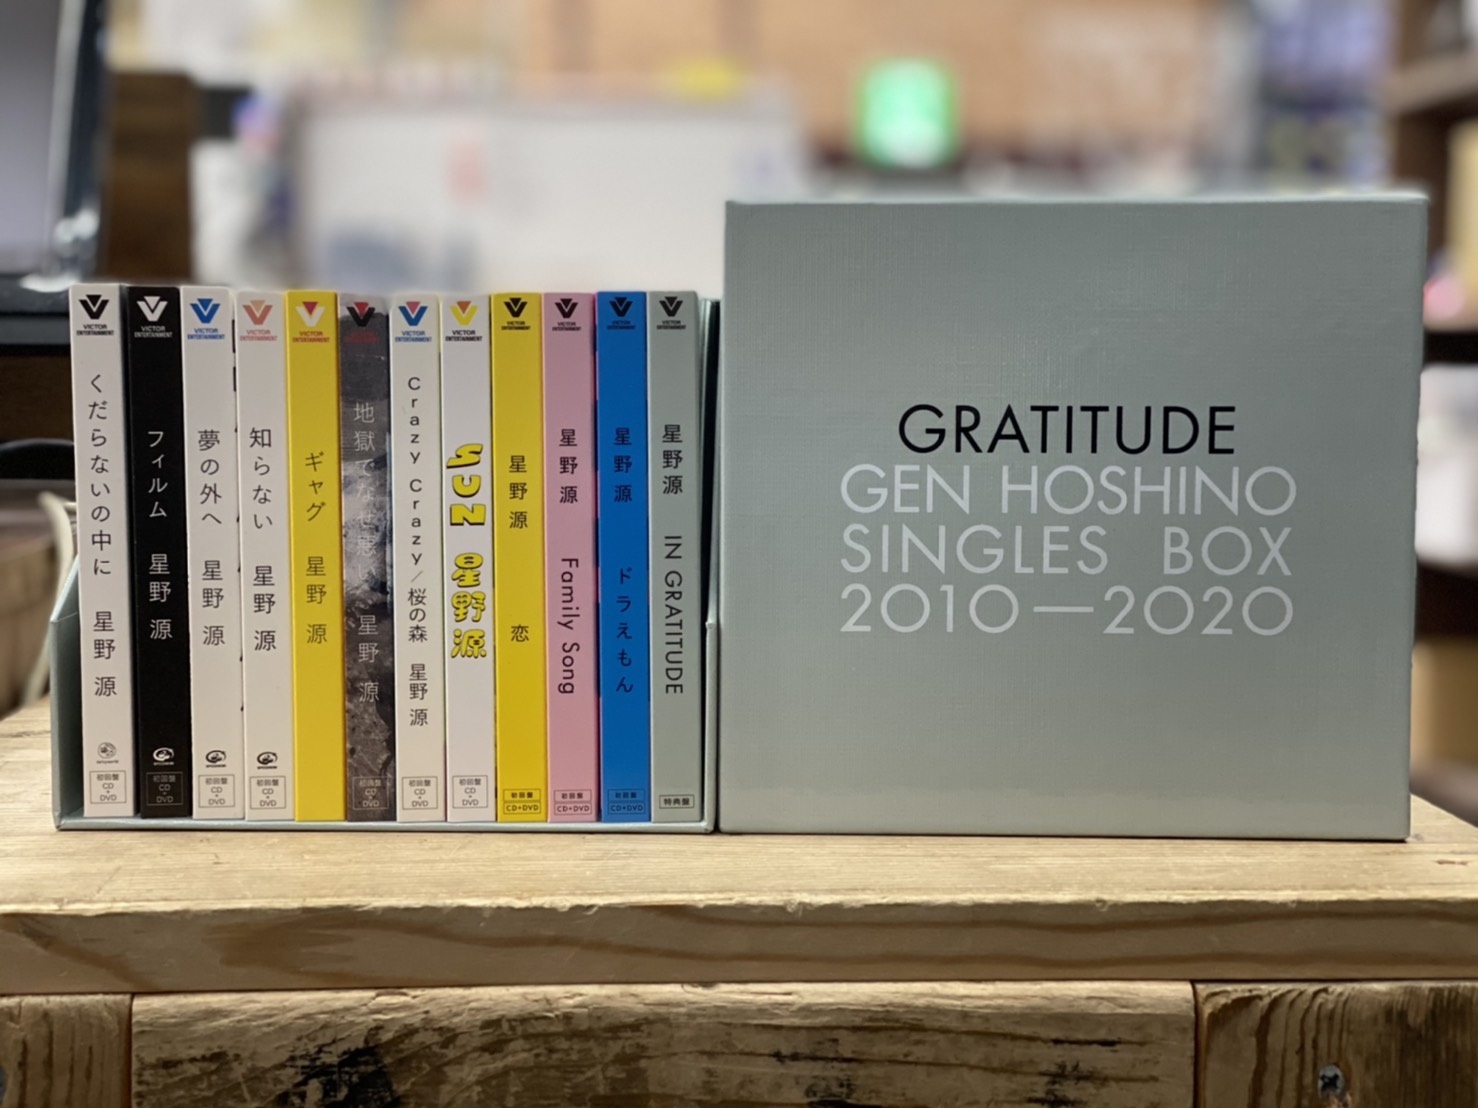 2/17☆〈星野源/Gen Hoshino Singles Box “GRATITUDE”〉お売りいただき